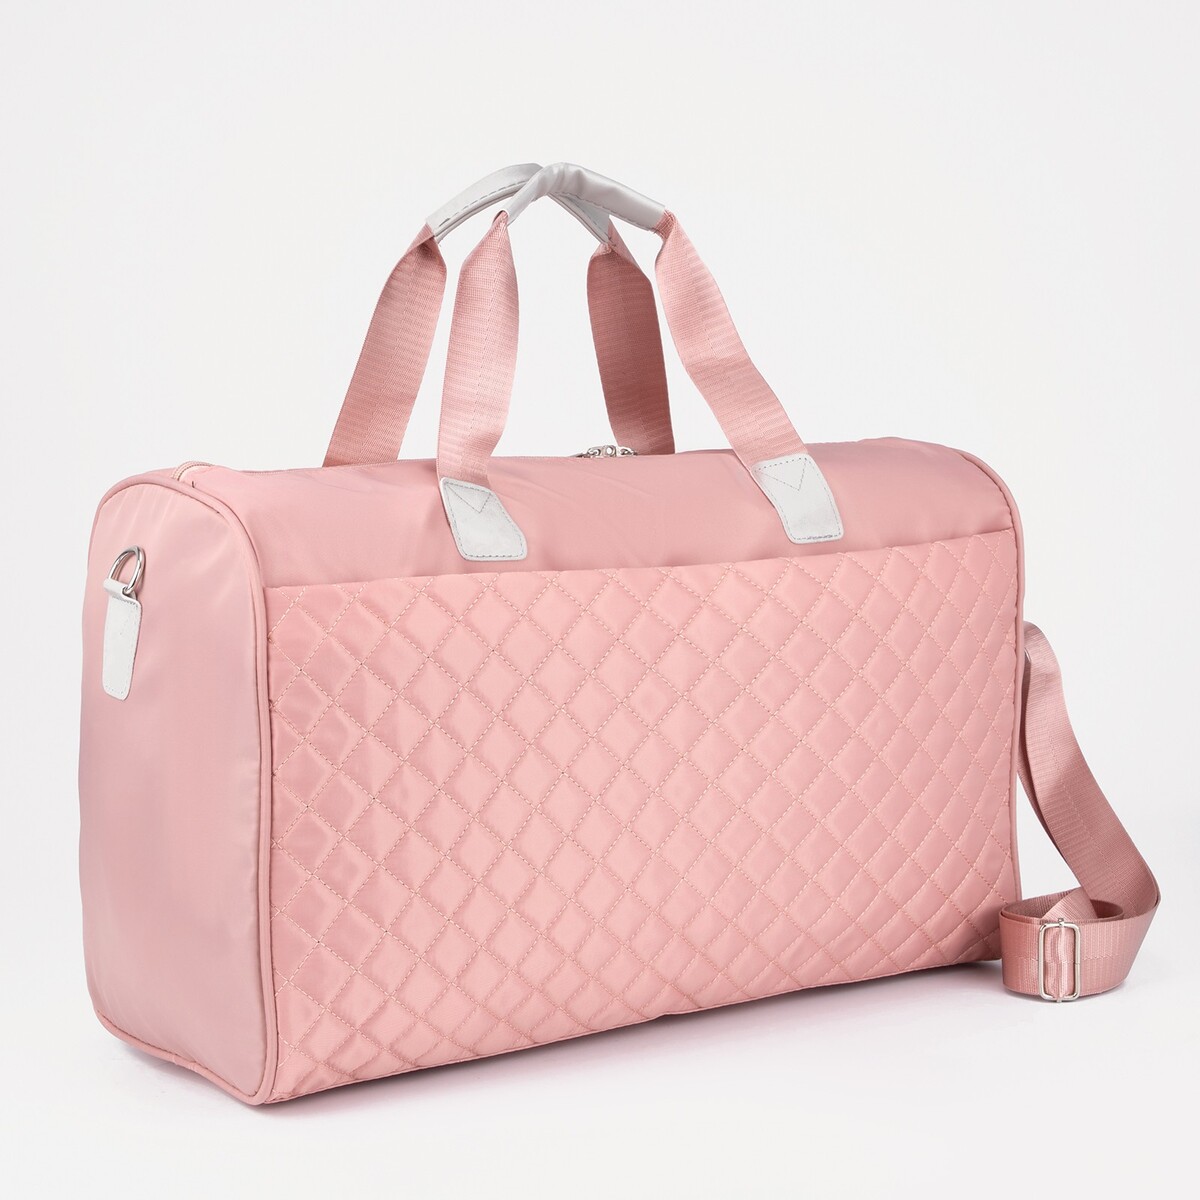 Сумка дорожная на молнии, наружный карман, длинный ремень, держатель для чемодана, цвет розовый сумка дорожная складная в косметичку отдел на молнии держатель для чемодана наружный карман розовый